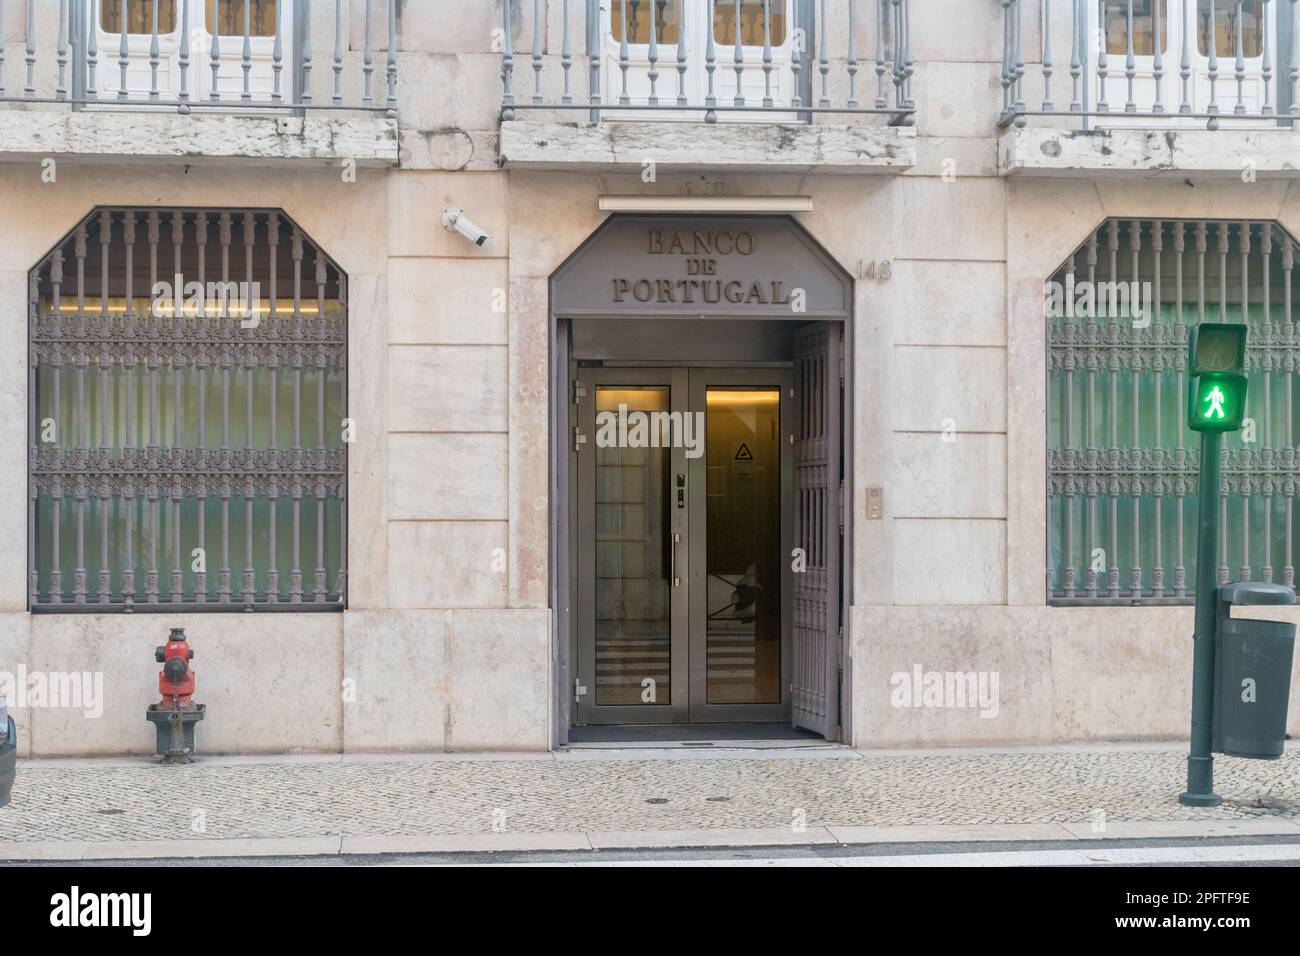 Lisbonne, Portugal - 6 décembre 2022: Entrée à la Banque du Portugal (Banco de Portugal). Banque centrale de la République portugaise. Banque D'Images